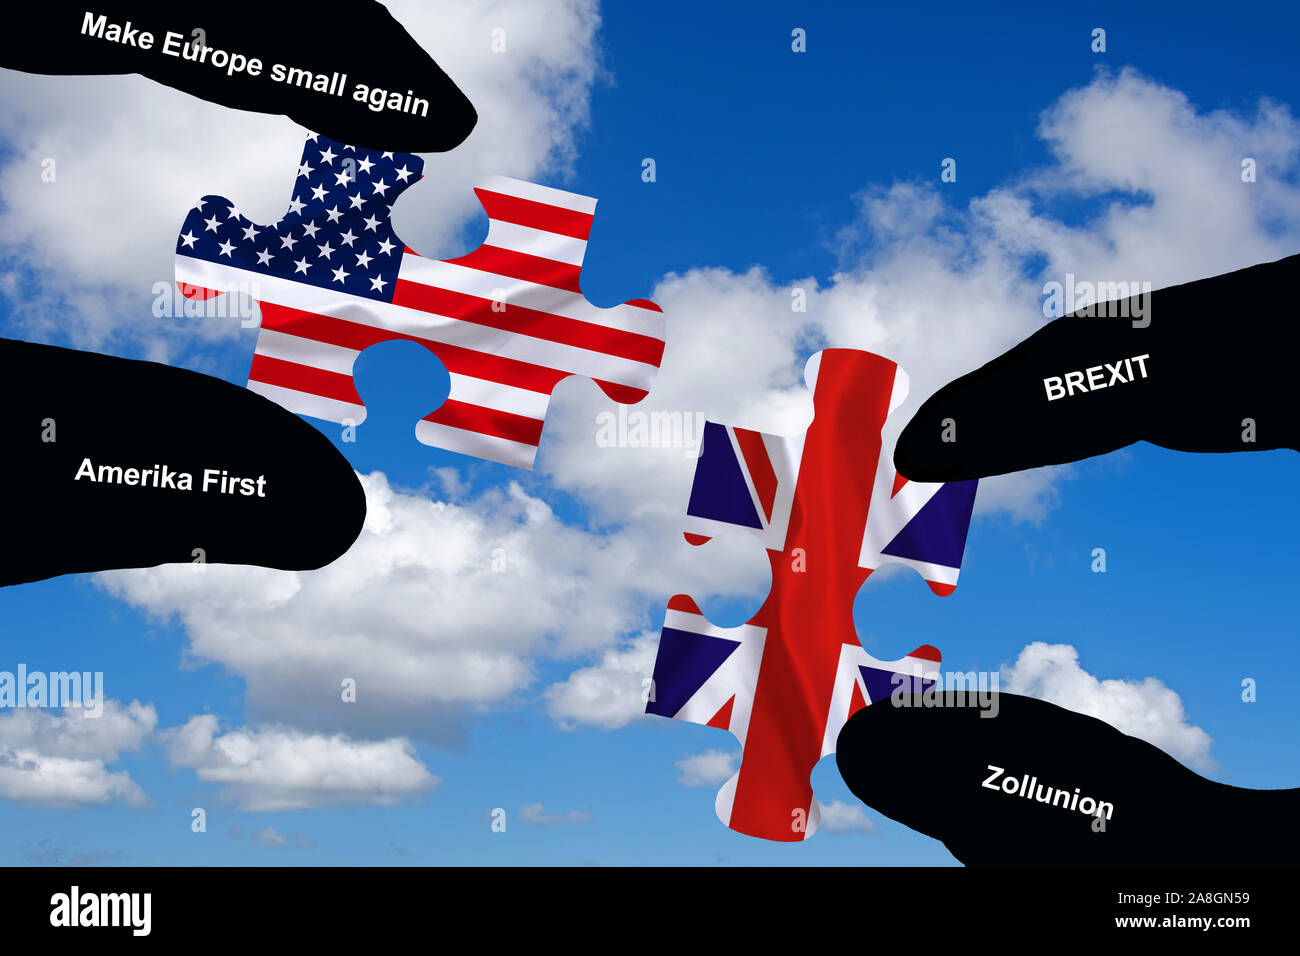 Zwei Hände halten jeweils ein Puzzle Teil, Silhouette, Konfrontation, Annäherung, Krieg, Handelskrieg, Wirtschaftskrieg, USA, Grossbritannien, England Stock Photo